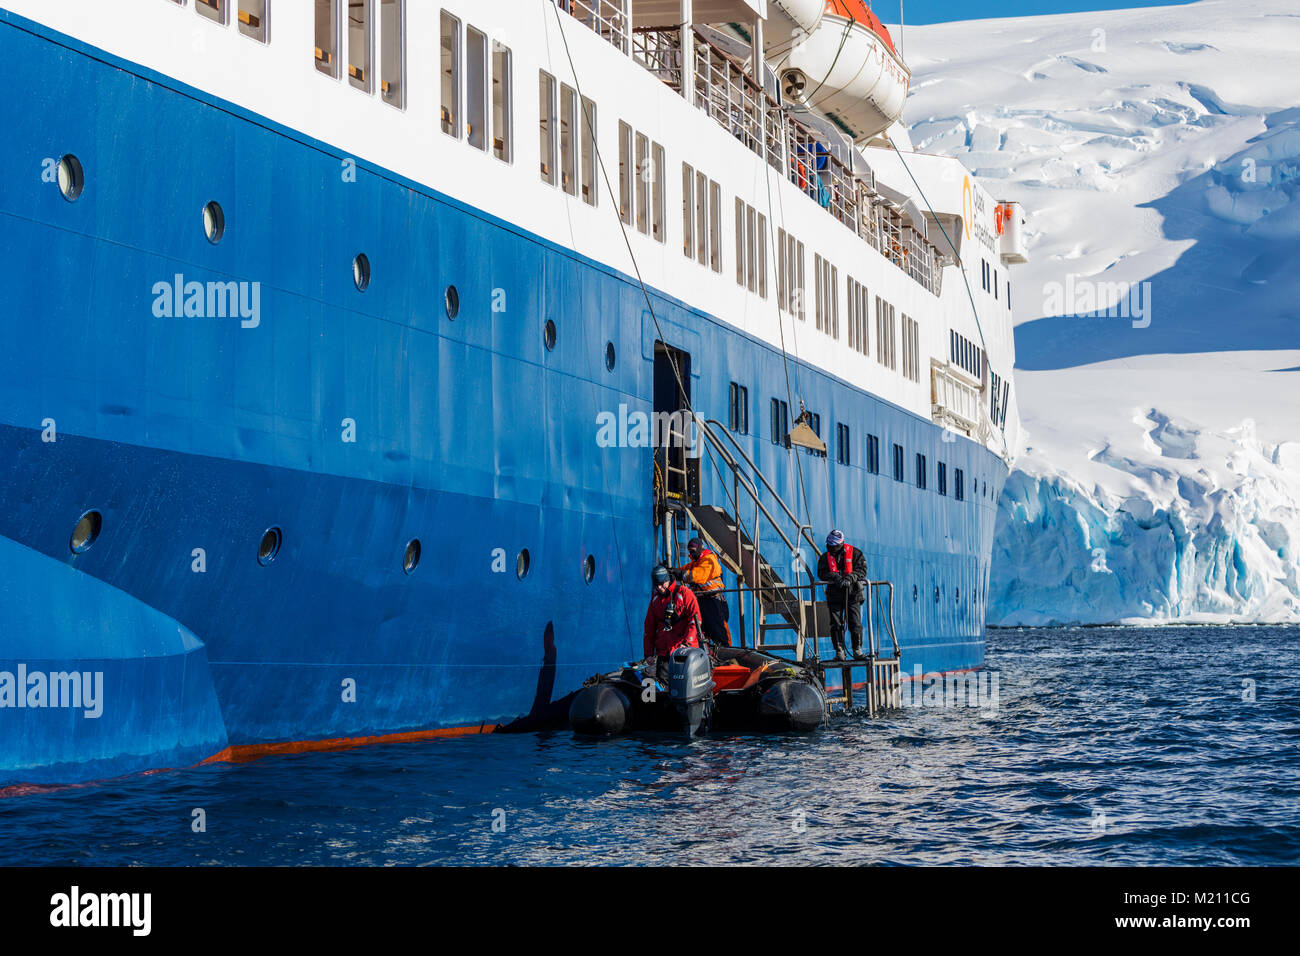 Les grands bateaux Zodiac gonflable alpinisme navette skieurs à l'Antarctique de l'océan des navires à passagers ; l'aventurier Île Nansen Banque D'Images